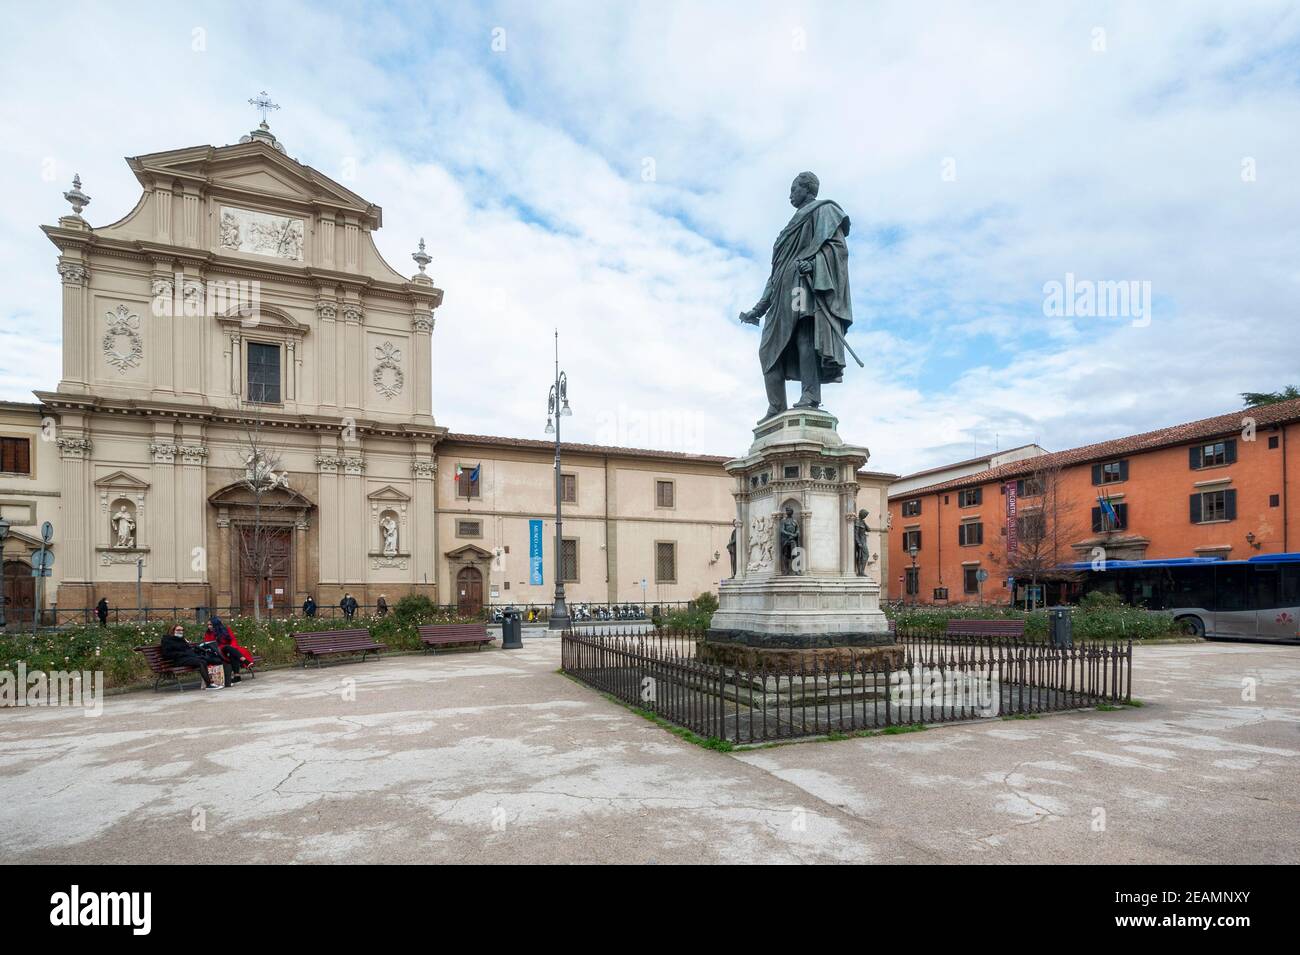 Florence, Italie - 2021 janvier 31 : Piazza San Marco avec son église baroque. Statue en bronze de Manfredo Fanti au centre de la place. Banque D'Images